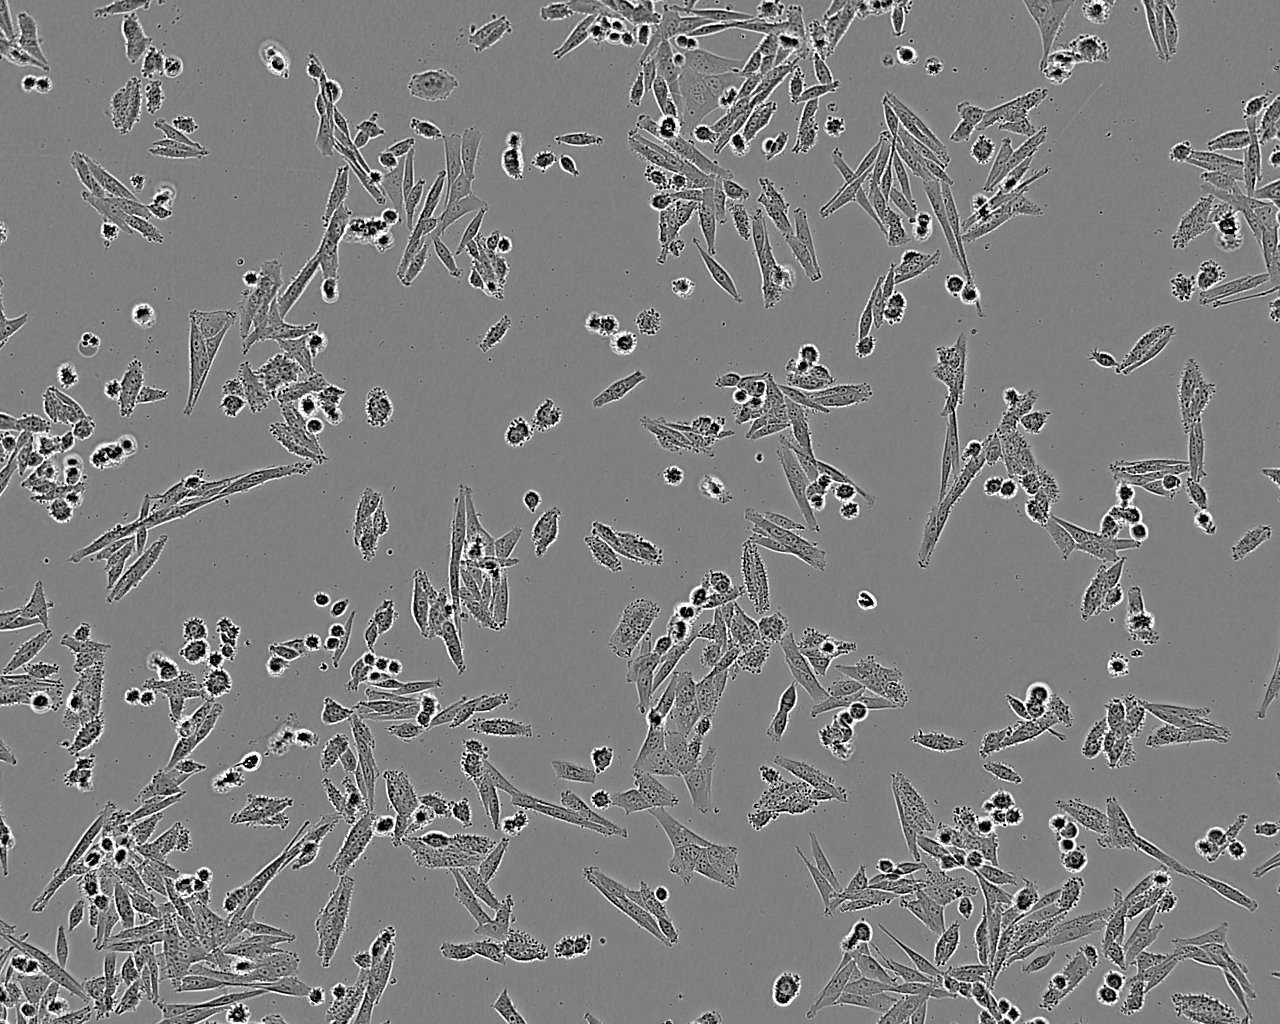 GB-1 epithelioid cells人脑胶质母细胞瘤细胞系